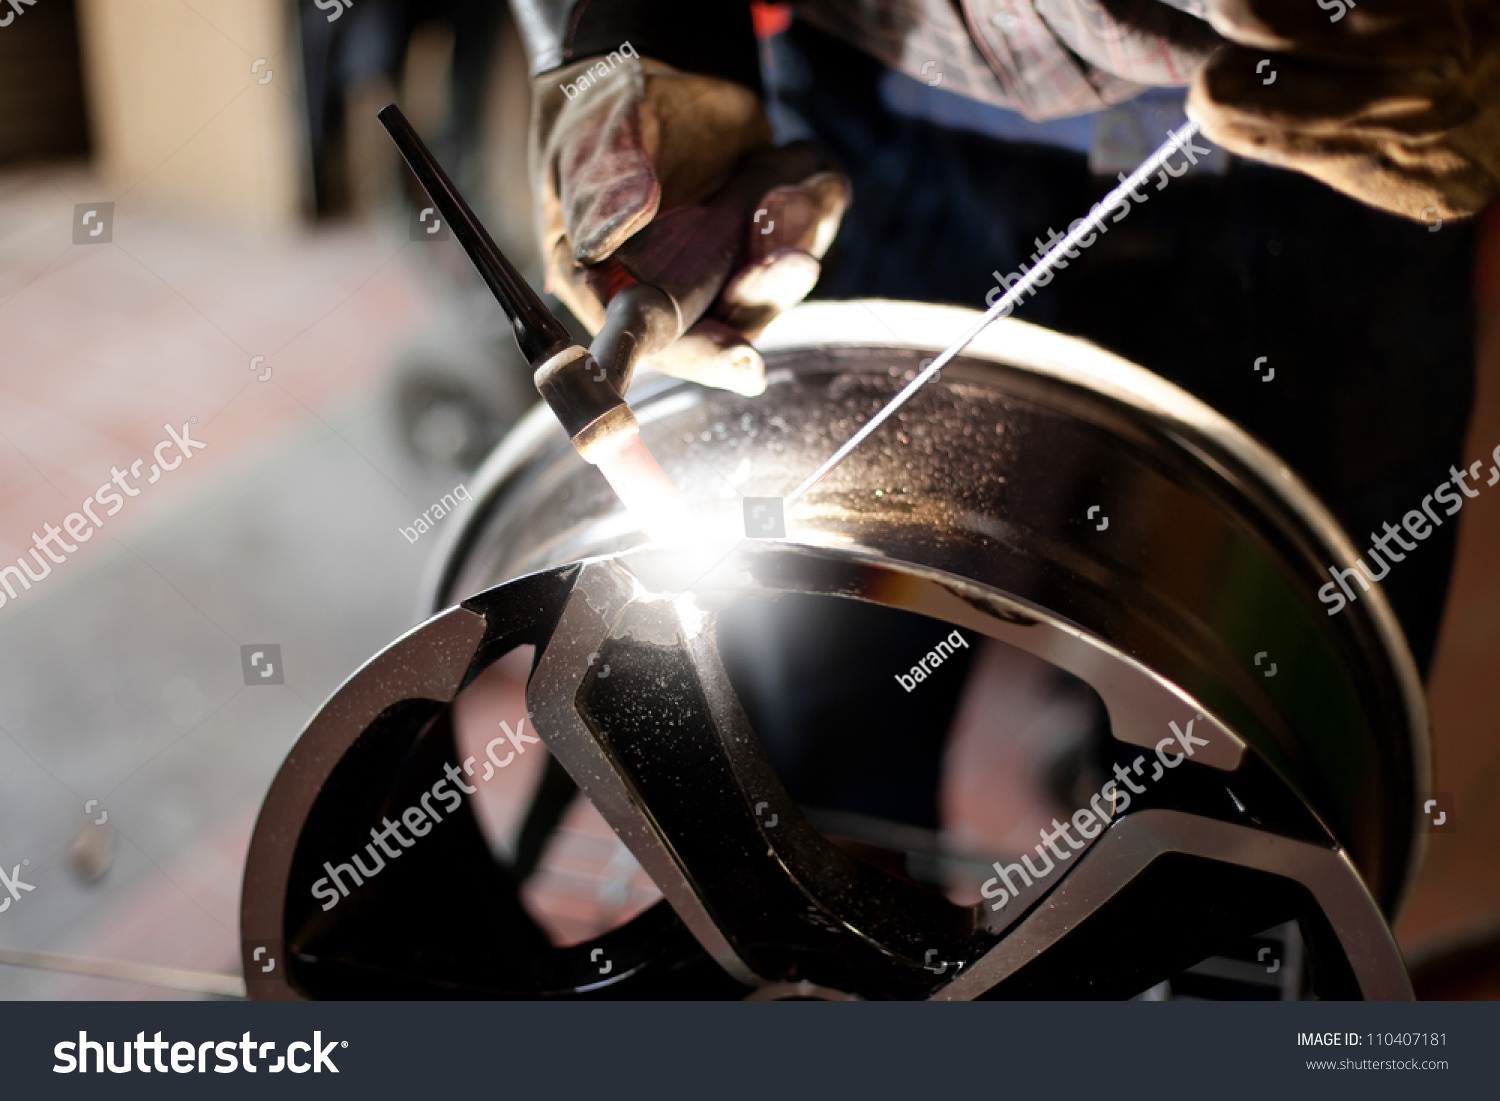 http://image.shutterstock.com/z/stock-photo-welding-alloy-rim-alloy-wheel-repair-110407181.jpg